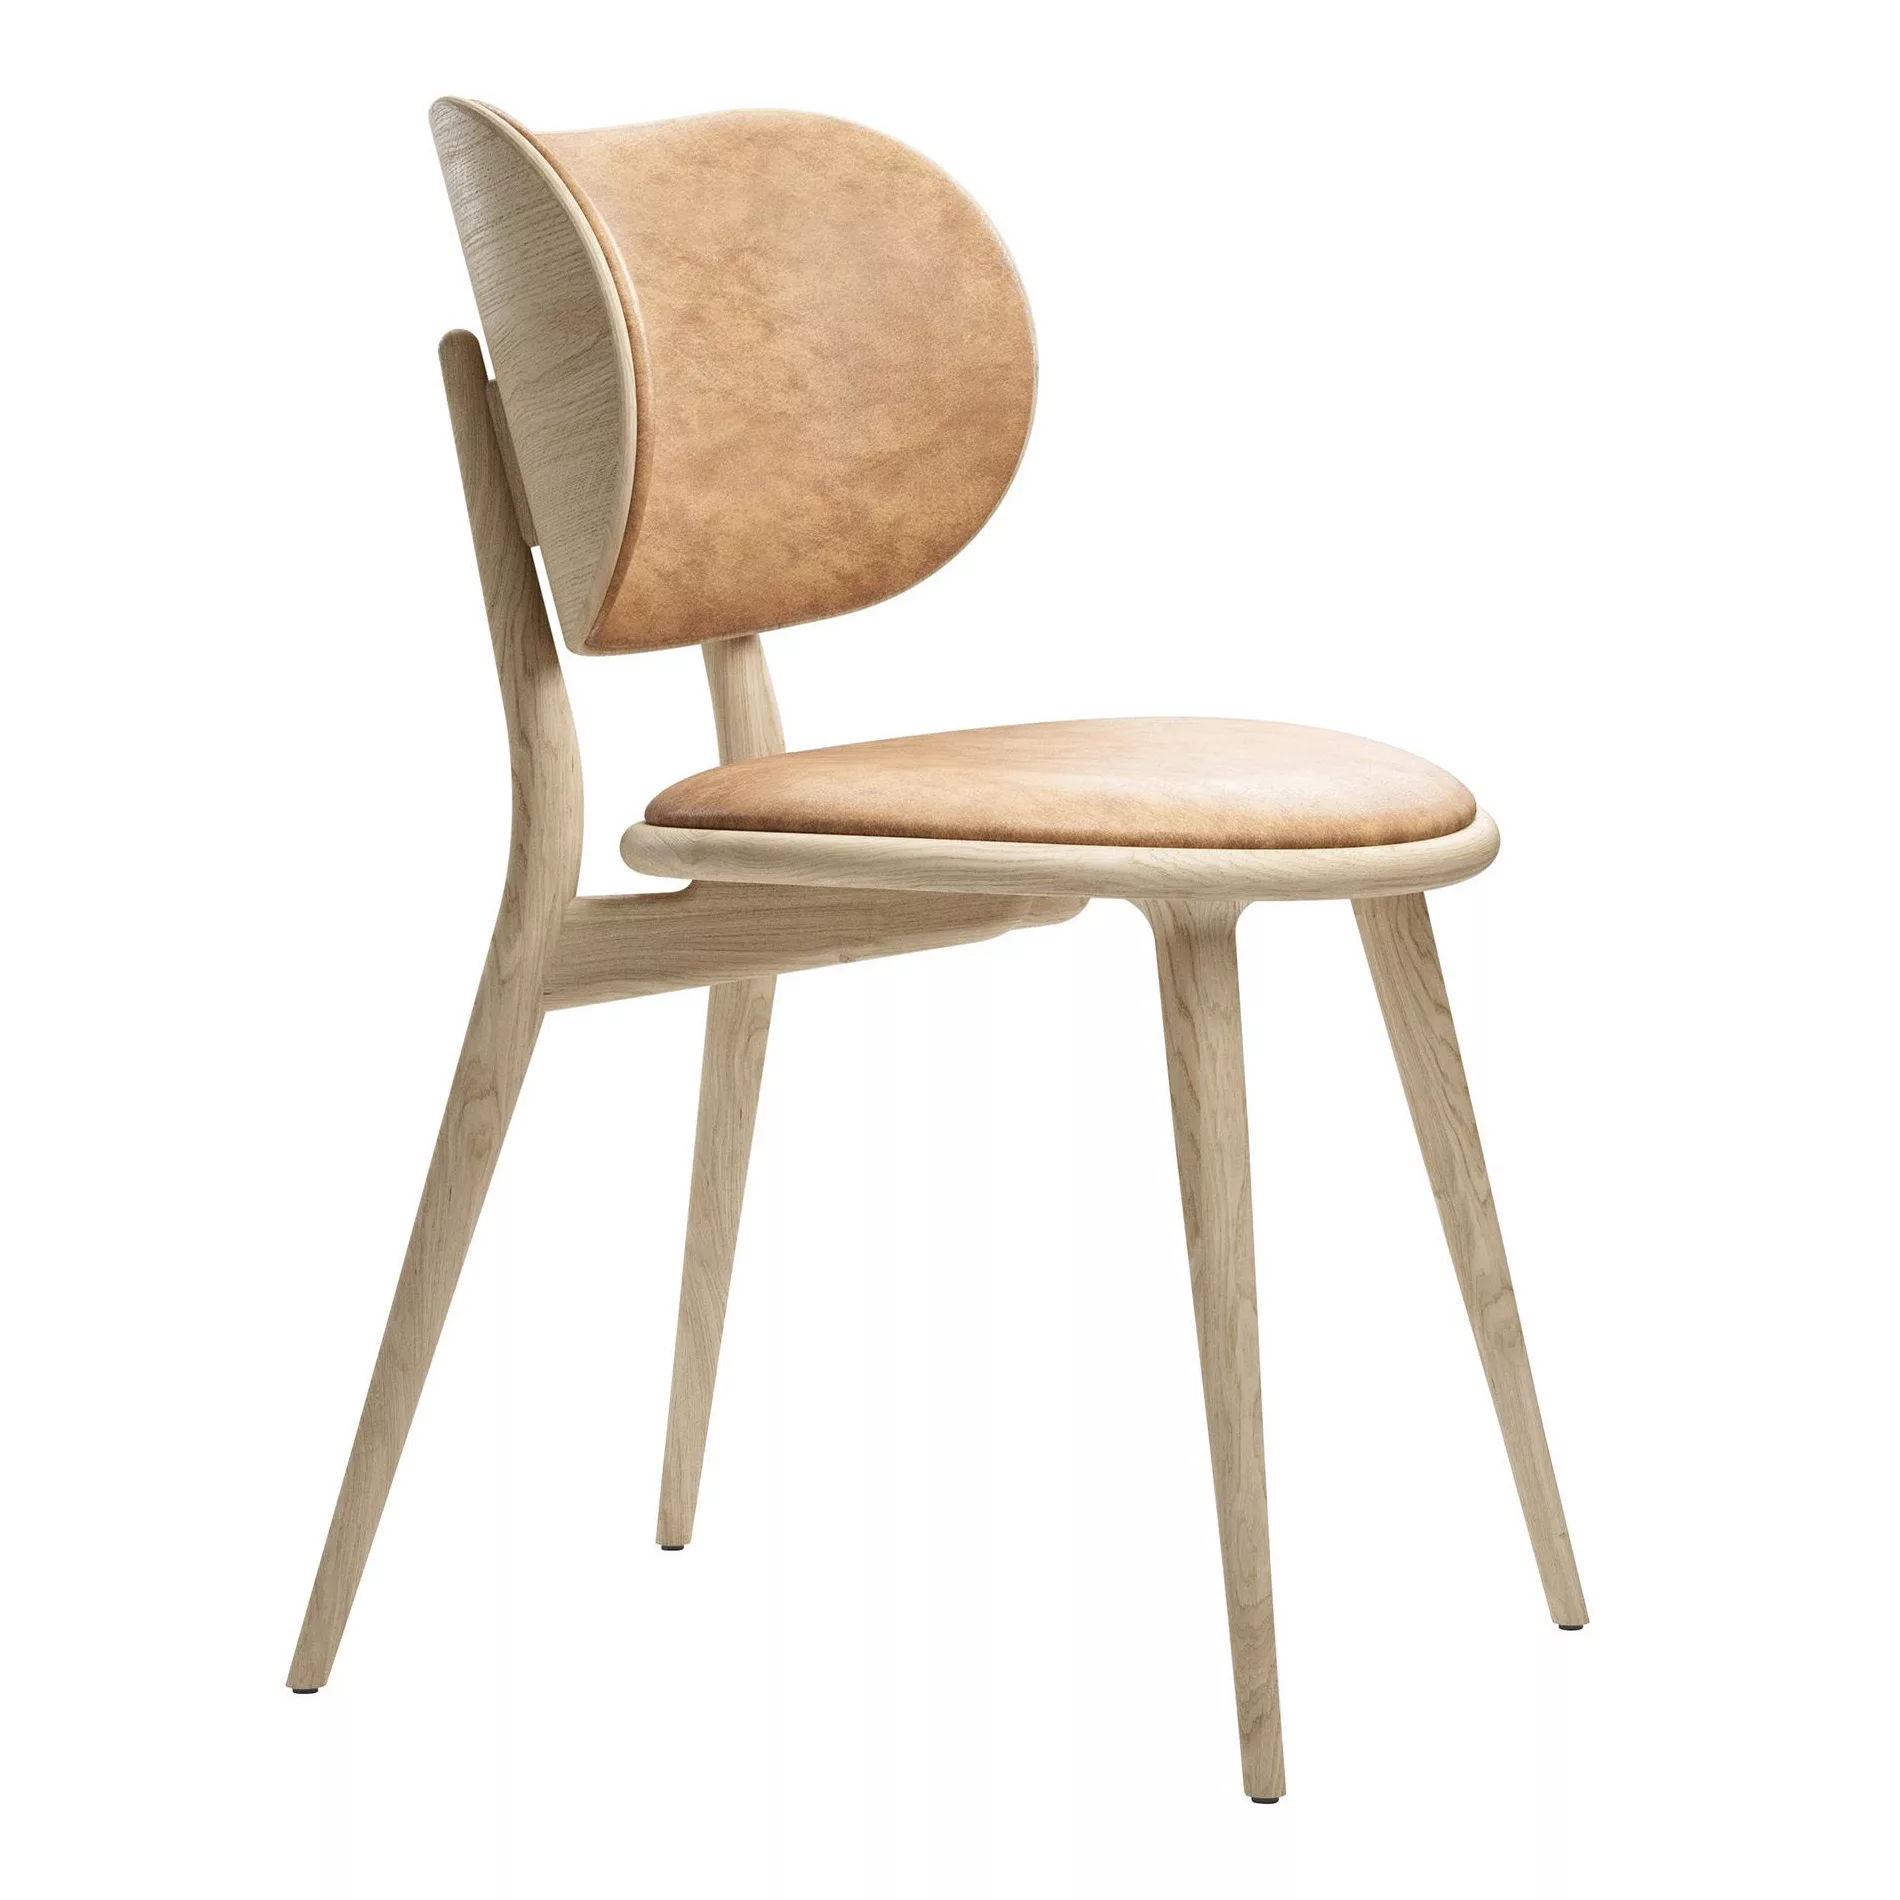 Mater - The Dining Chair - natürlich gegerbt/Sitz Leder/Füße Eiche matt lac günstig online kaufen